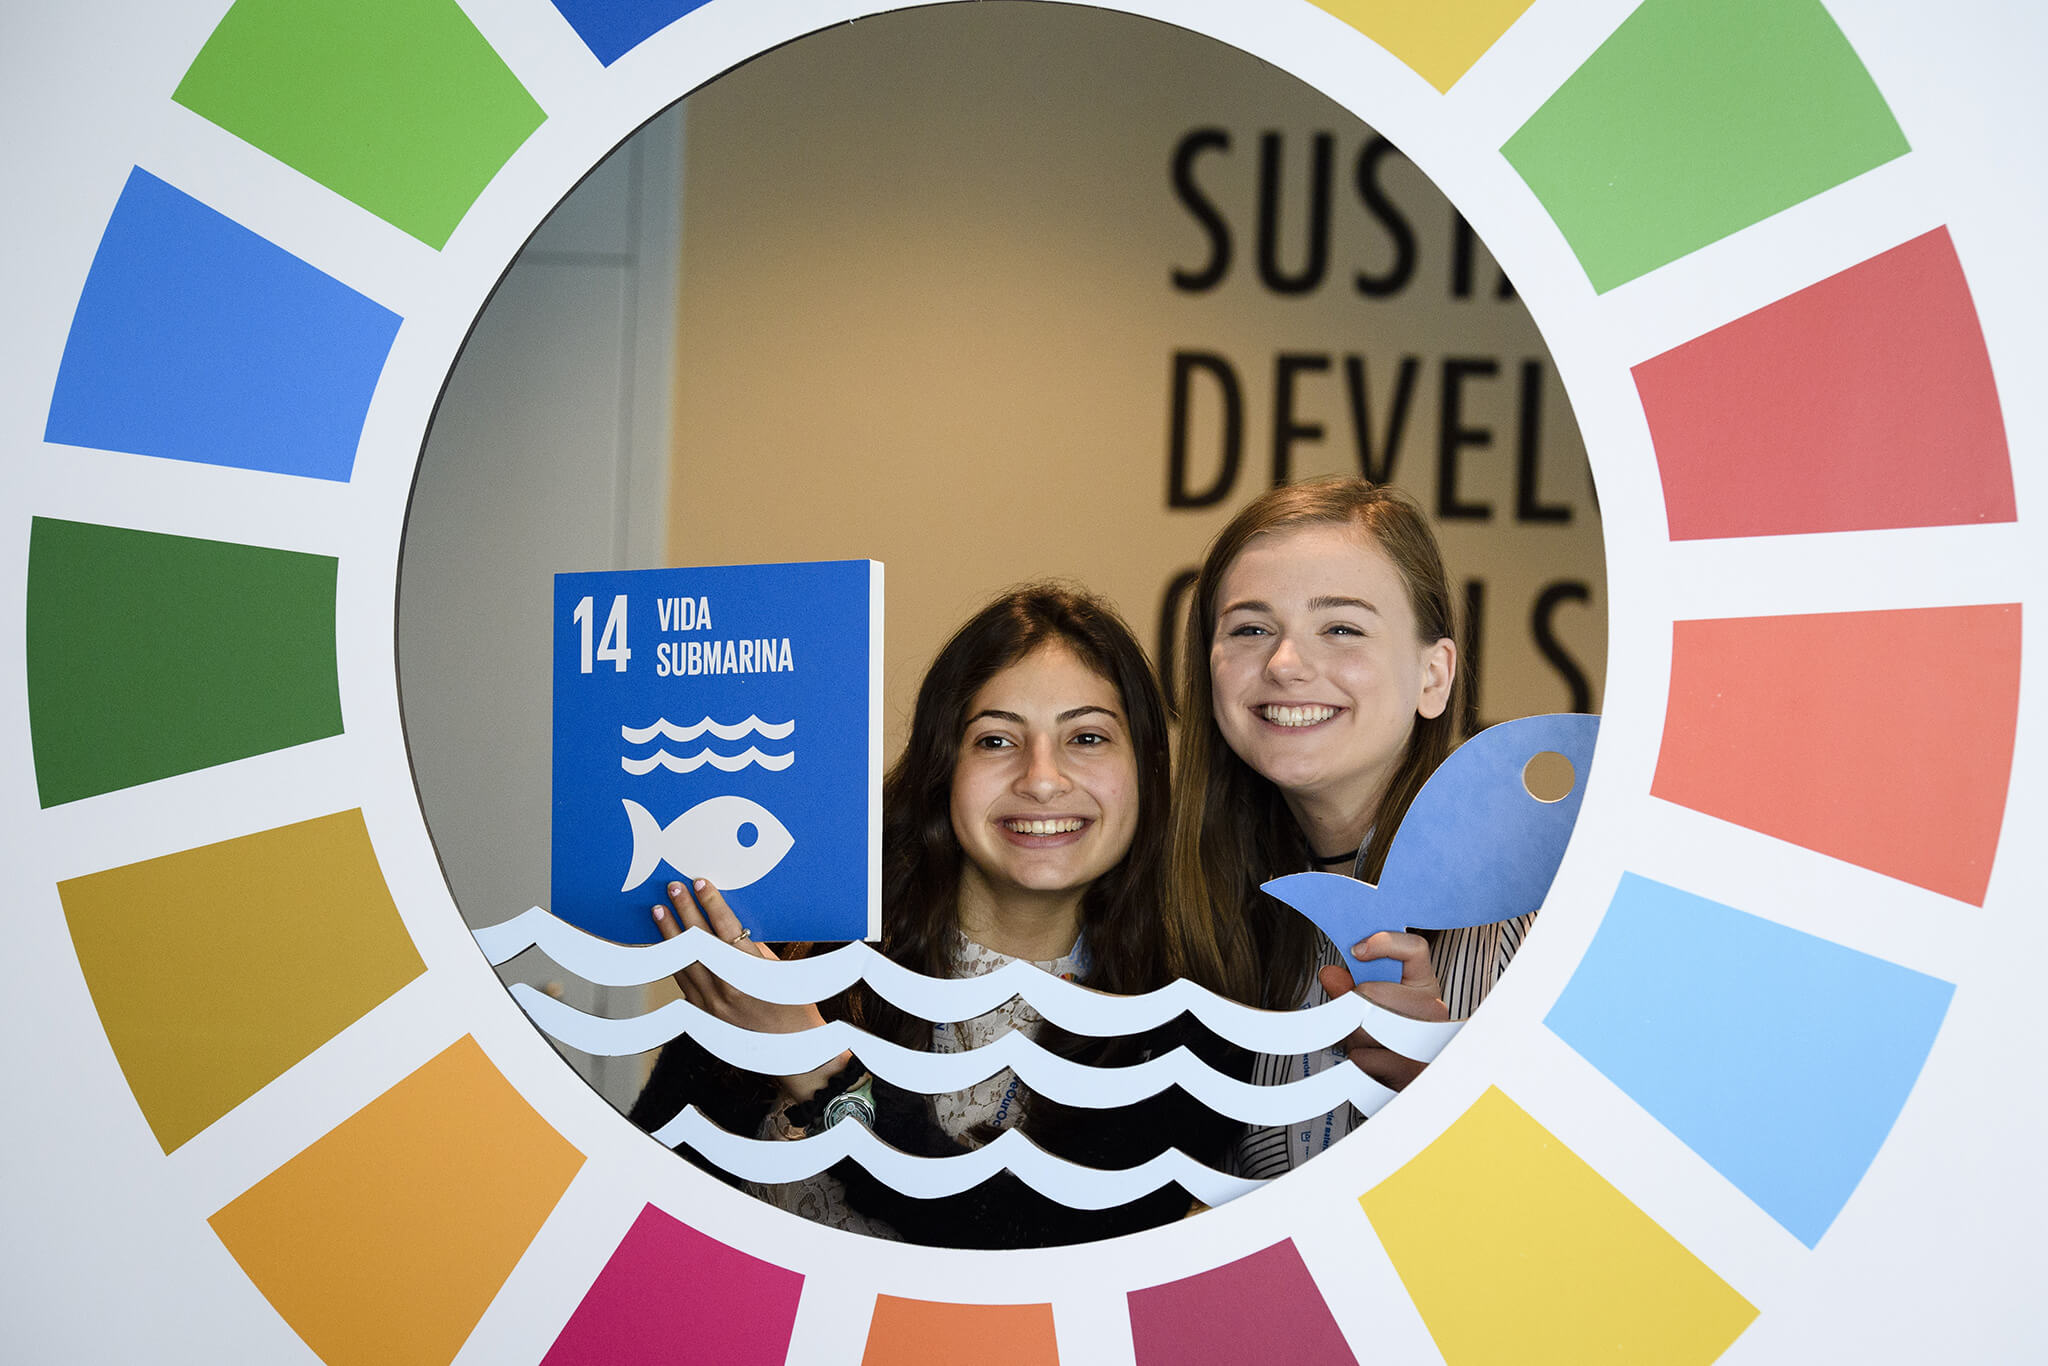 VanNorren-Aandacht voor de Sustainable Development Goals tijdens de UN Ocean Conference in 2017. UN Photo